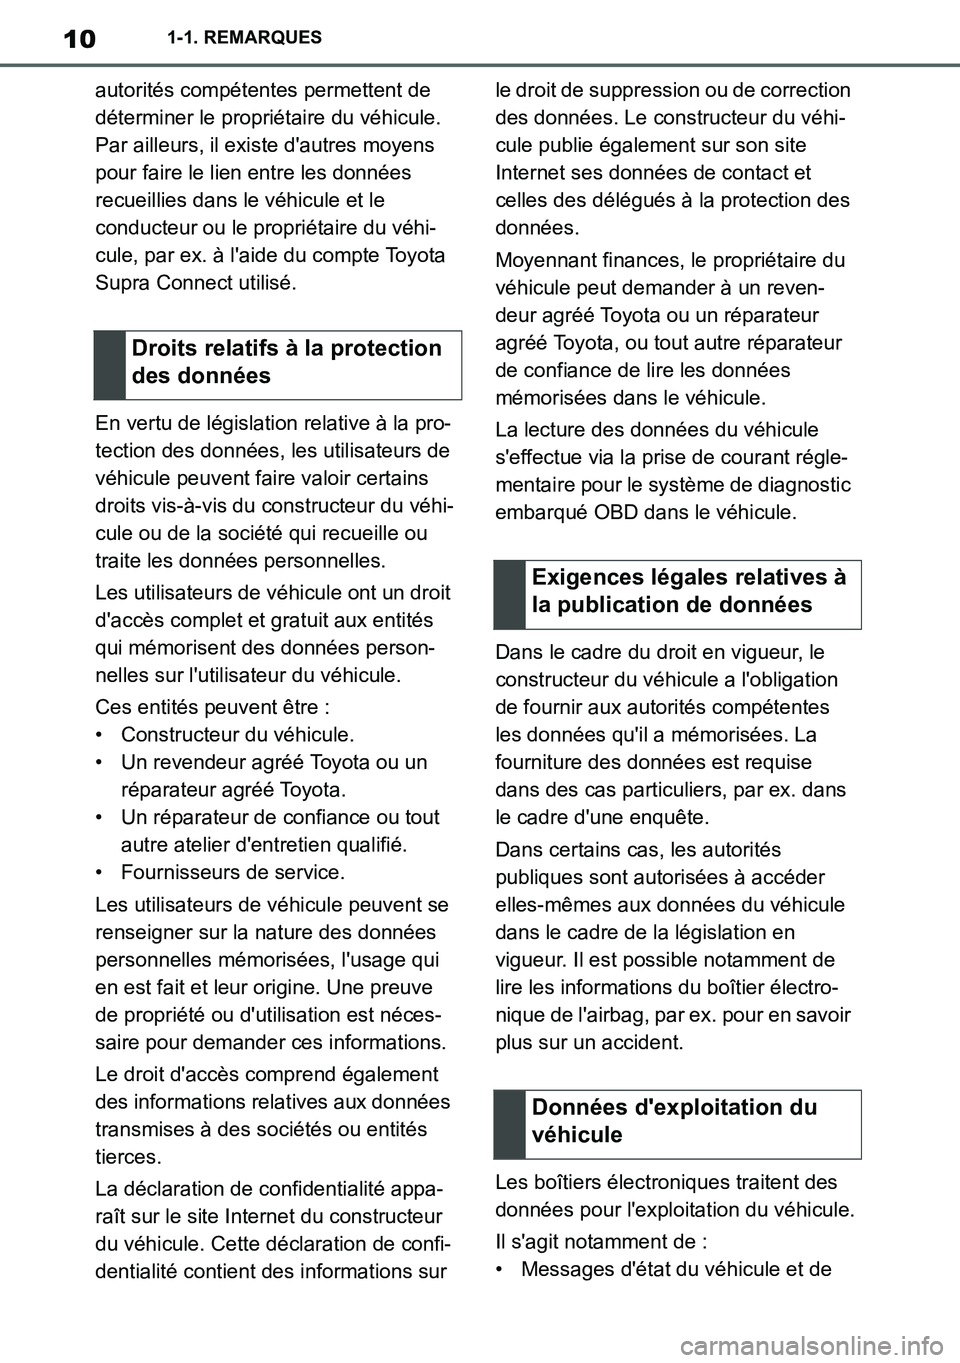 TOYOTA SUPRA 2020  Notices Demploi (in French) 10
Supra Owners Manual_EK
1-1. REMARQUES
autorités compétentes permettent de 
déterminer le propriétaire du véhicule. 
Par ailleurs, il existe dautres moyens 
pour faire le lien entre les donn�